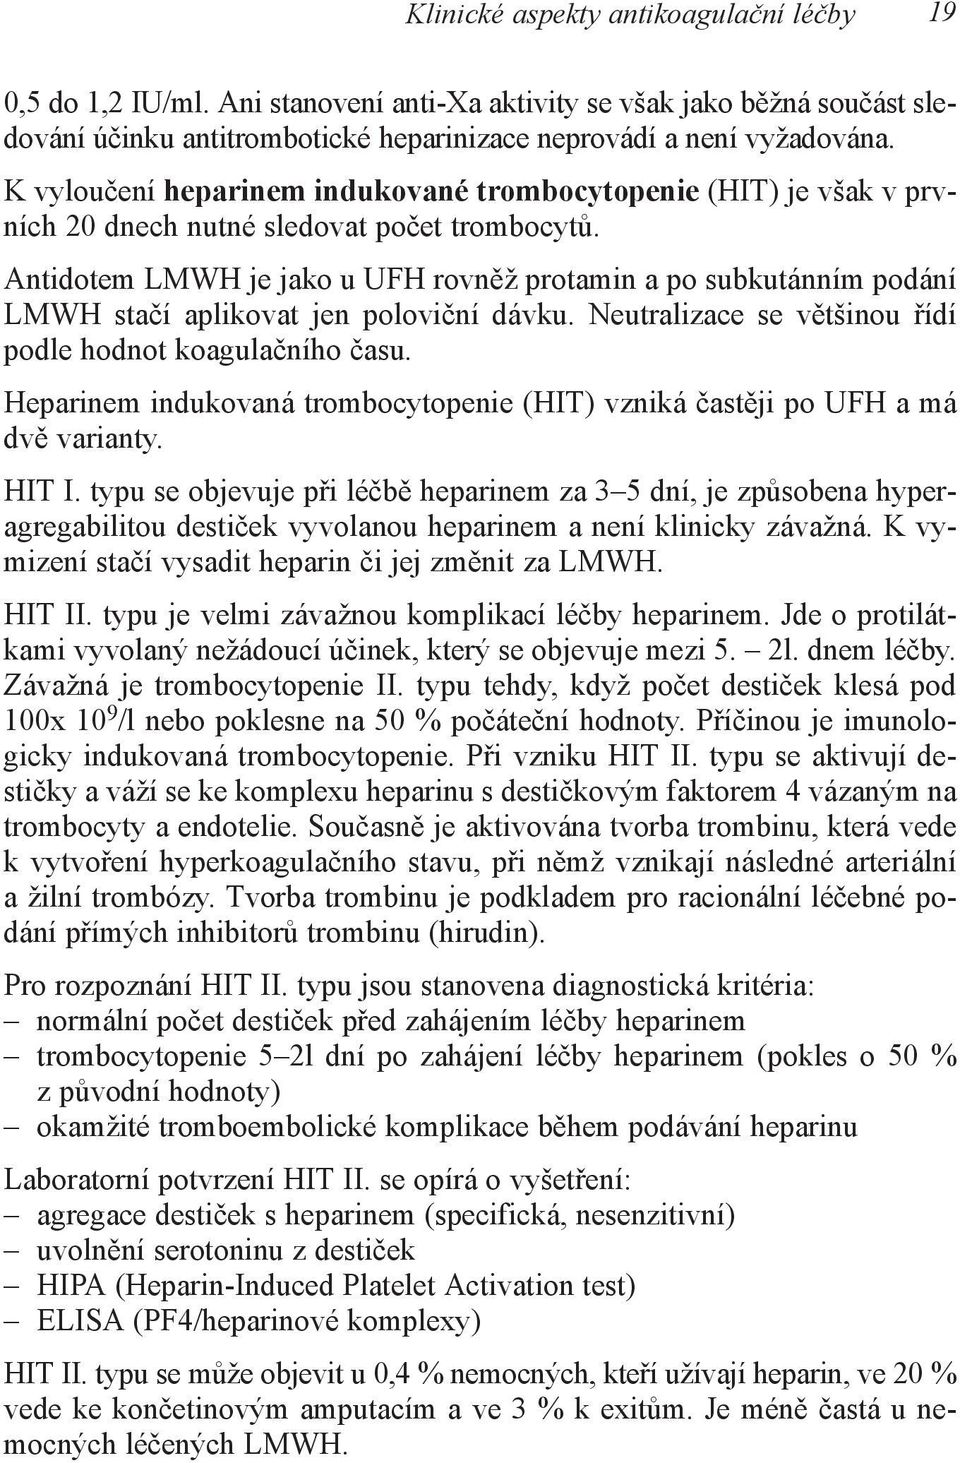 Antidotem LMWH je jako u UFH rovněž protamin a po subkutánním podání LMWH stačí aplikovat jen poloviční dávku. Neutralizace se většinou řídí podle hodnot koagulačního času.